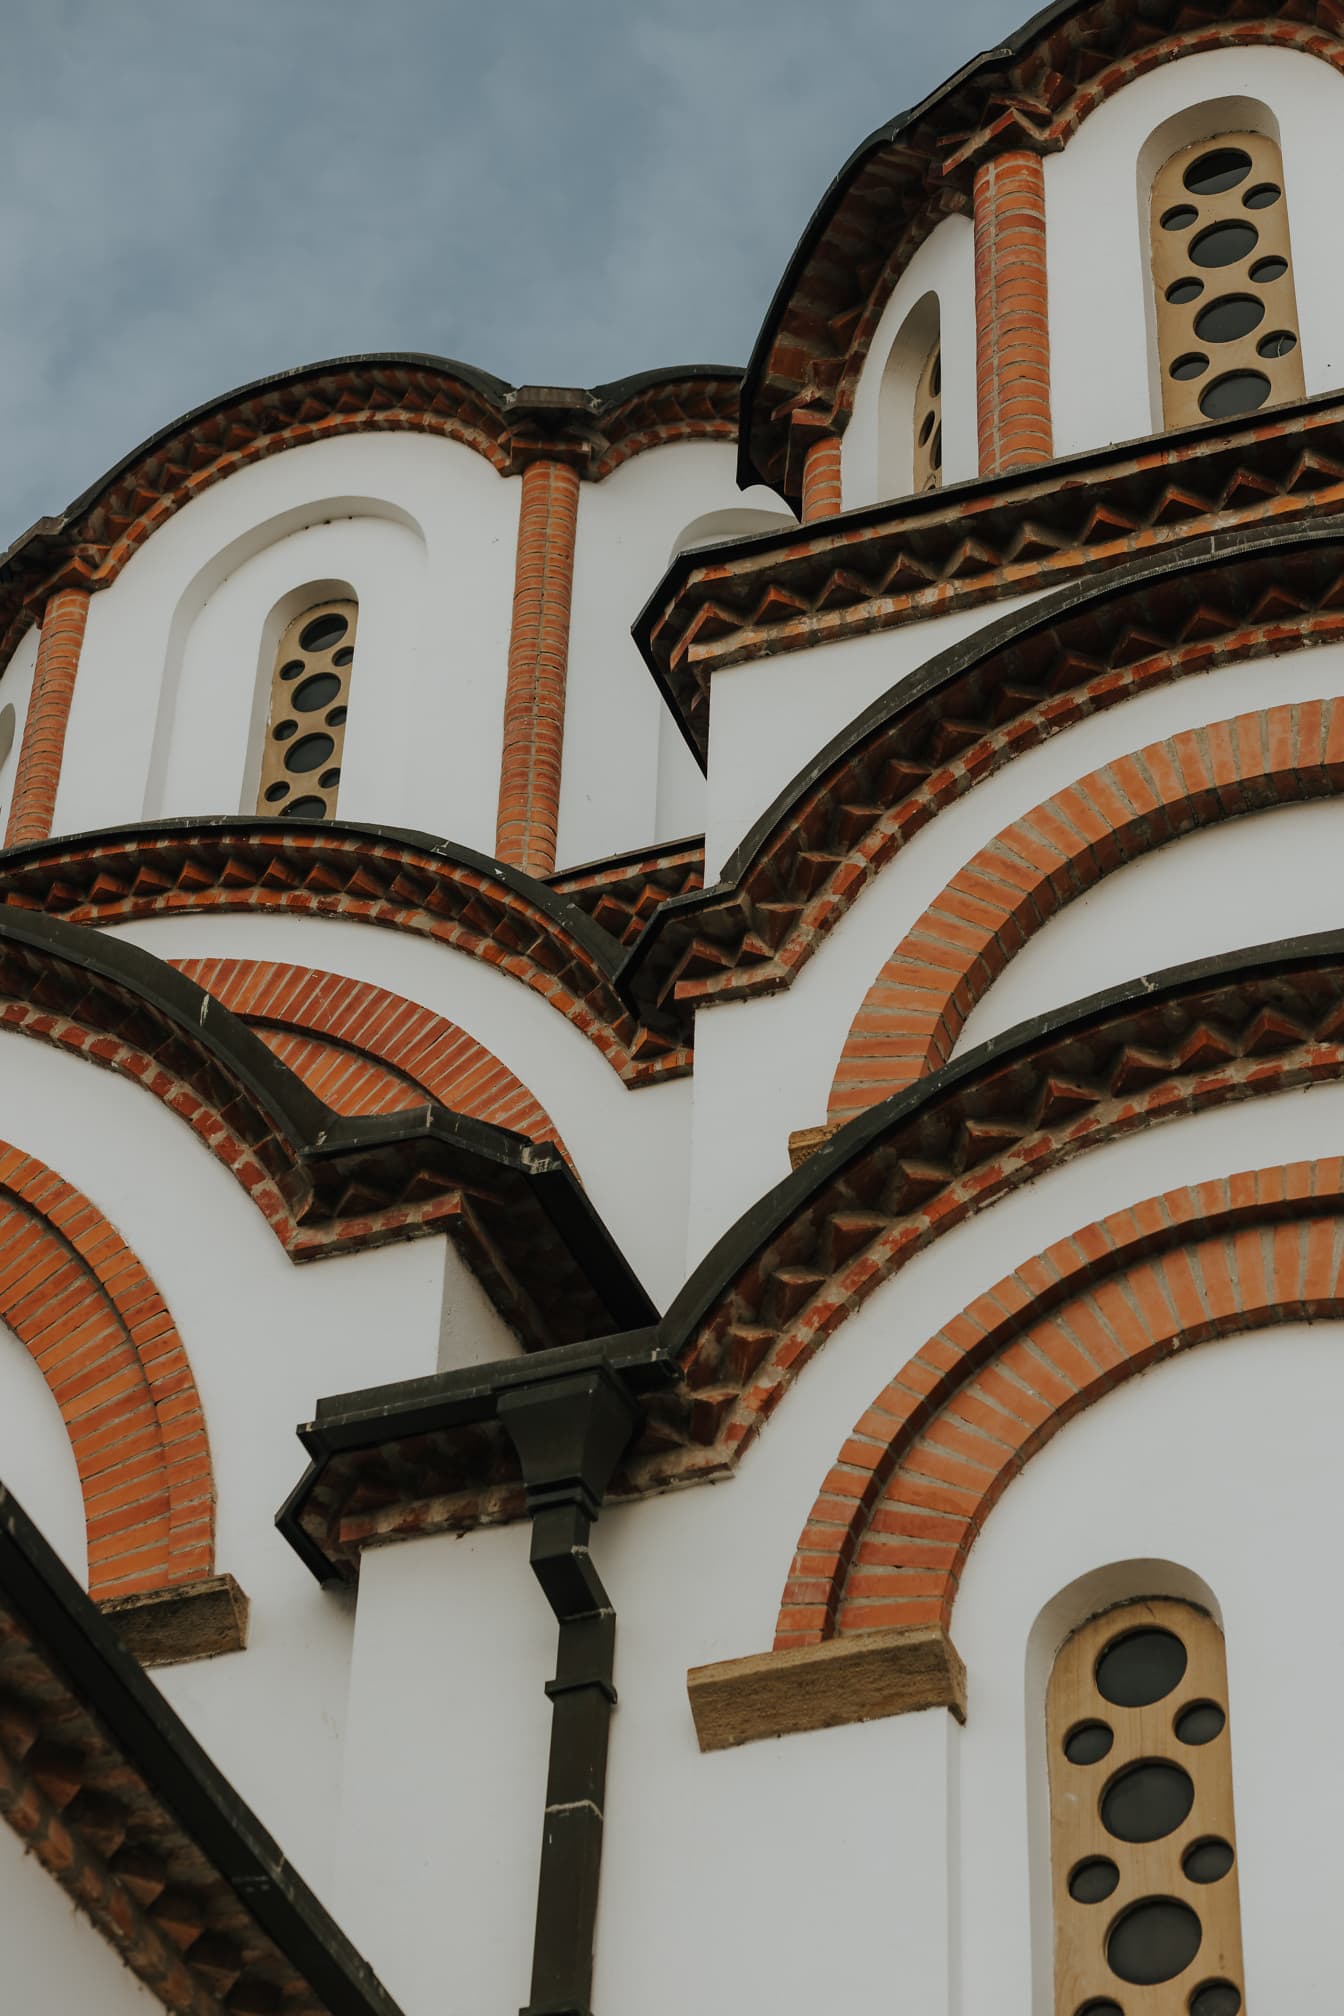 Gaya jendela sempit Bizantium abad pertengahan di gereja ortodoks